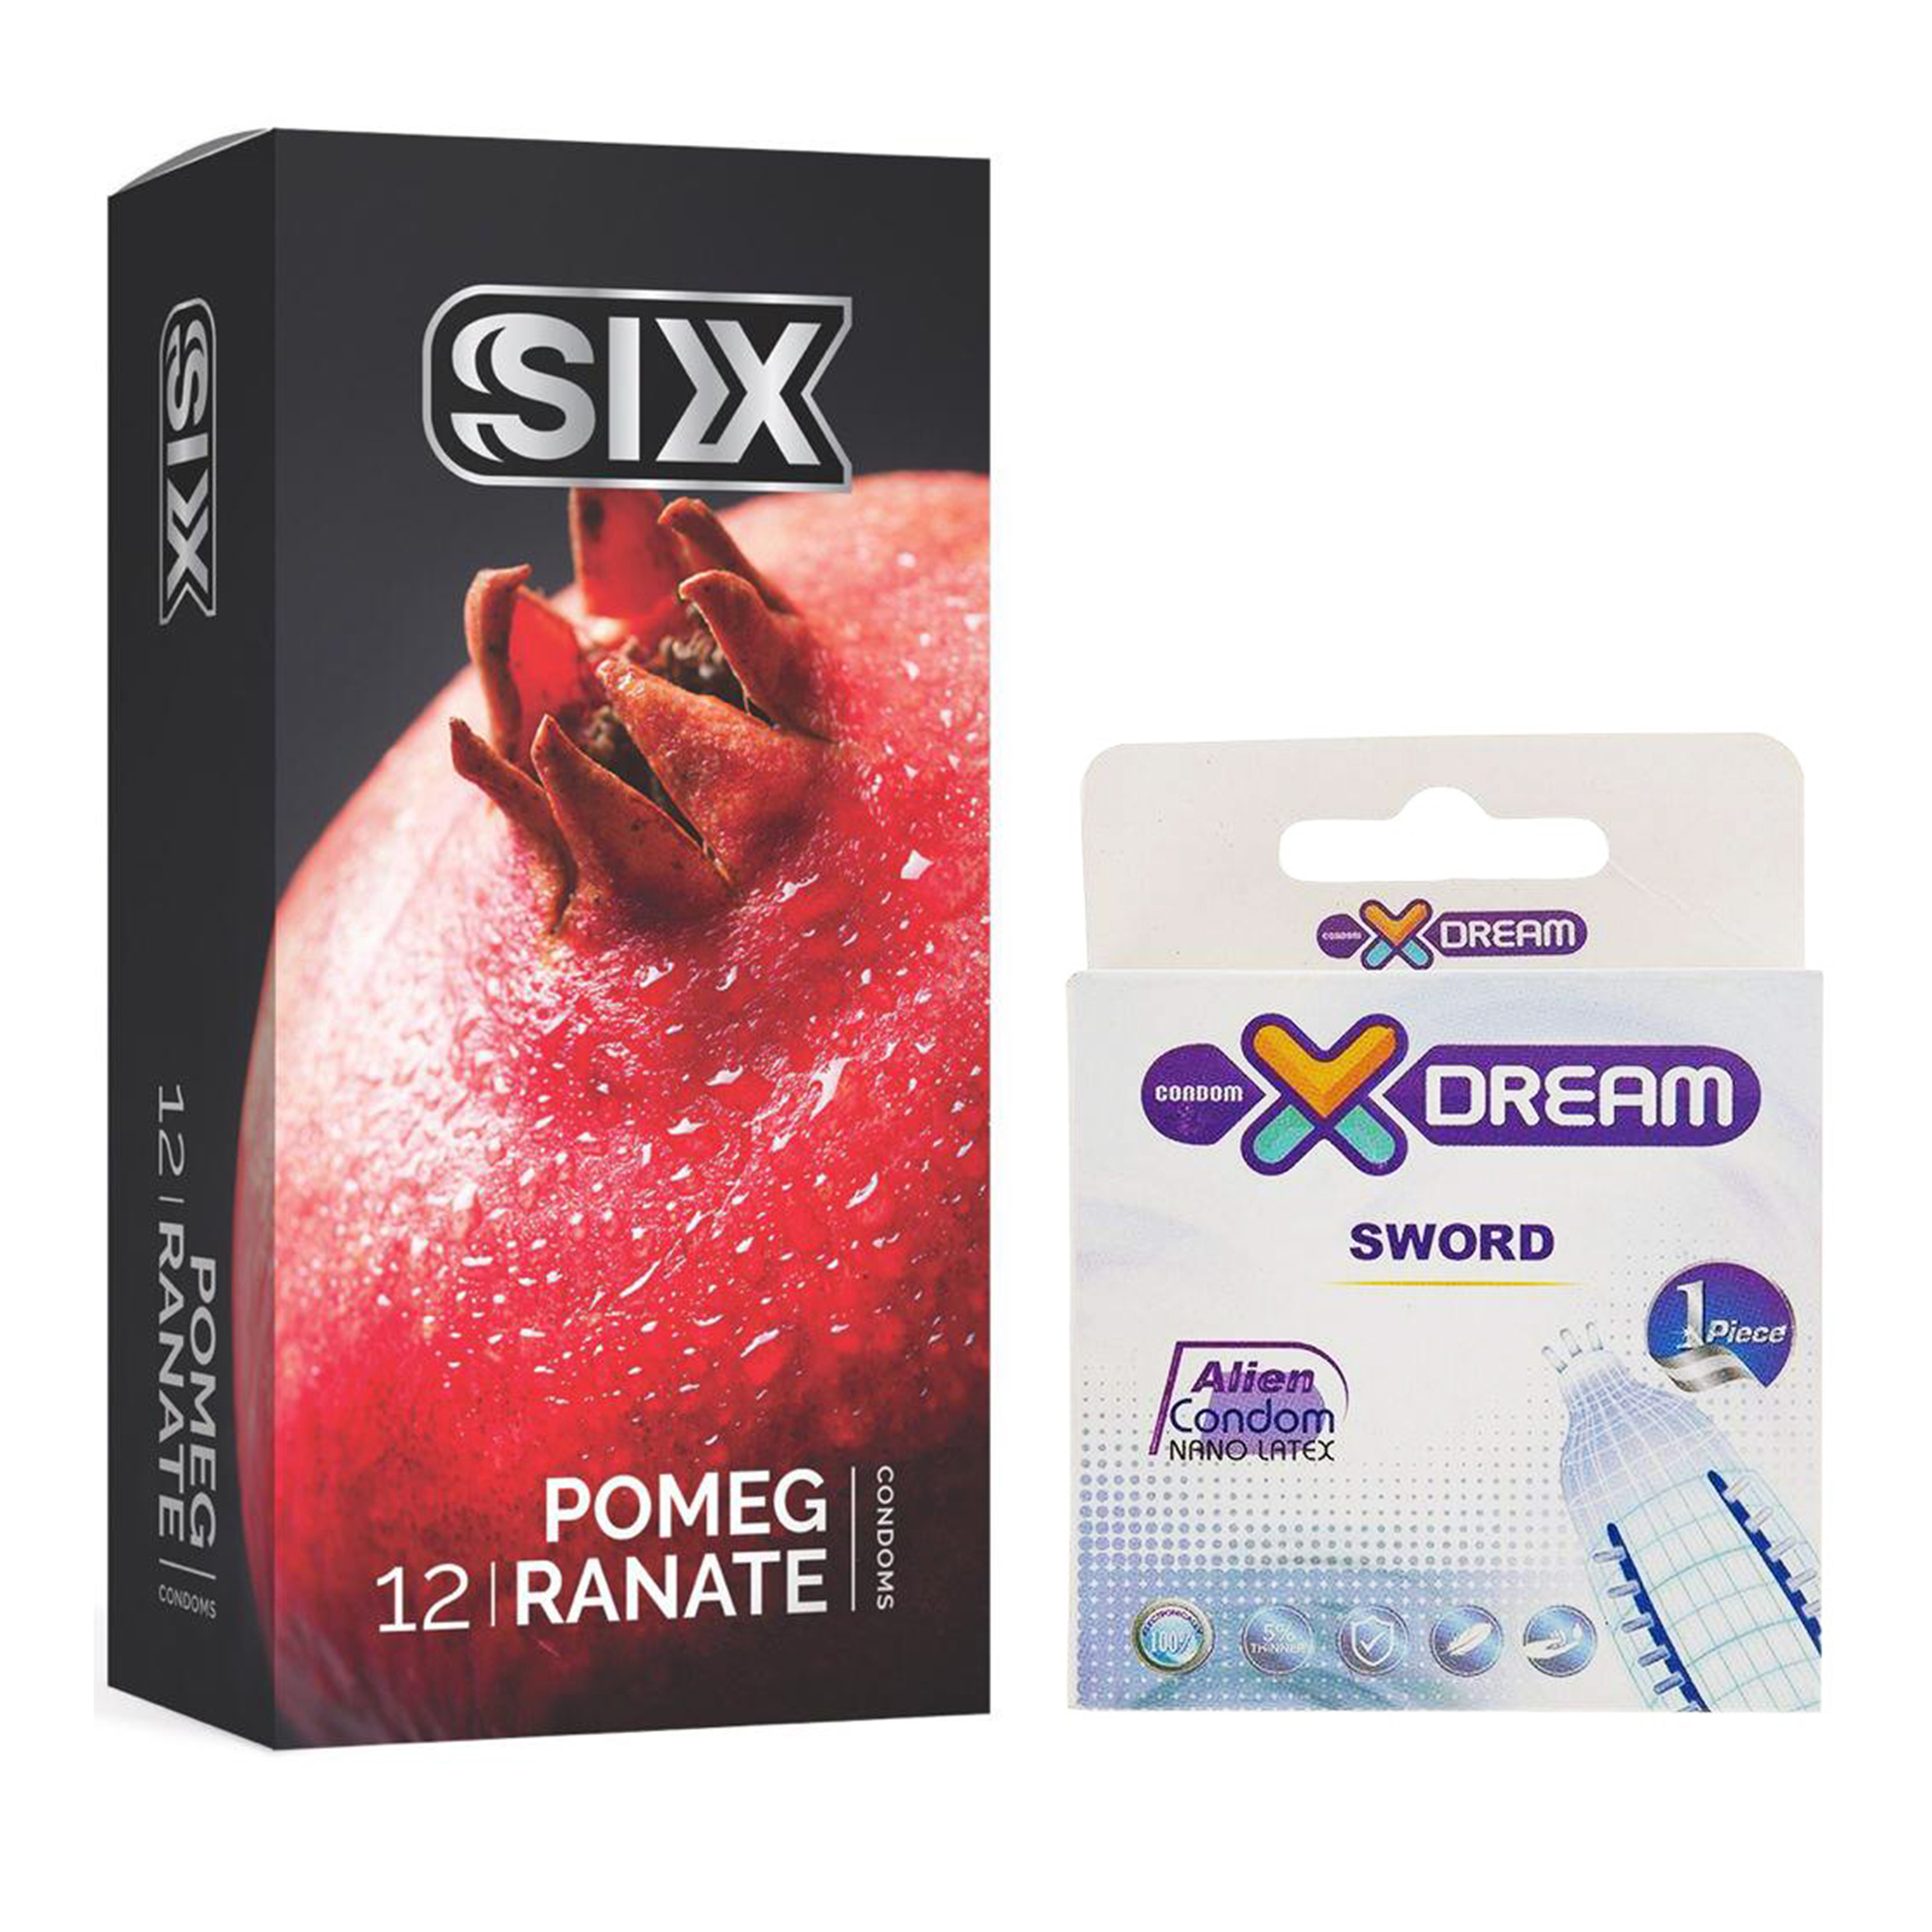 کاندوم سیکس مدل Pomegranate بسته ۱۲ عددی به همراه کاندوم ایکس دریم مدل Sword